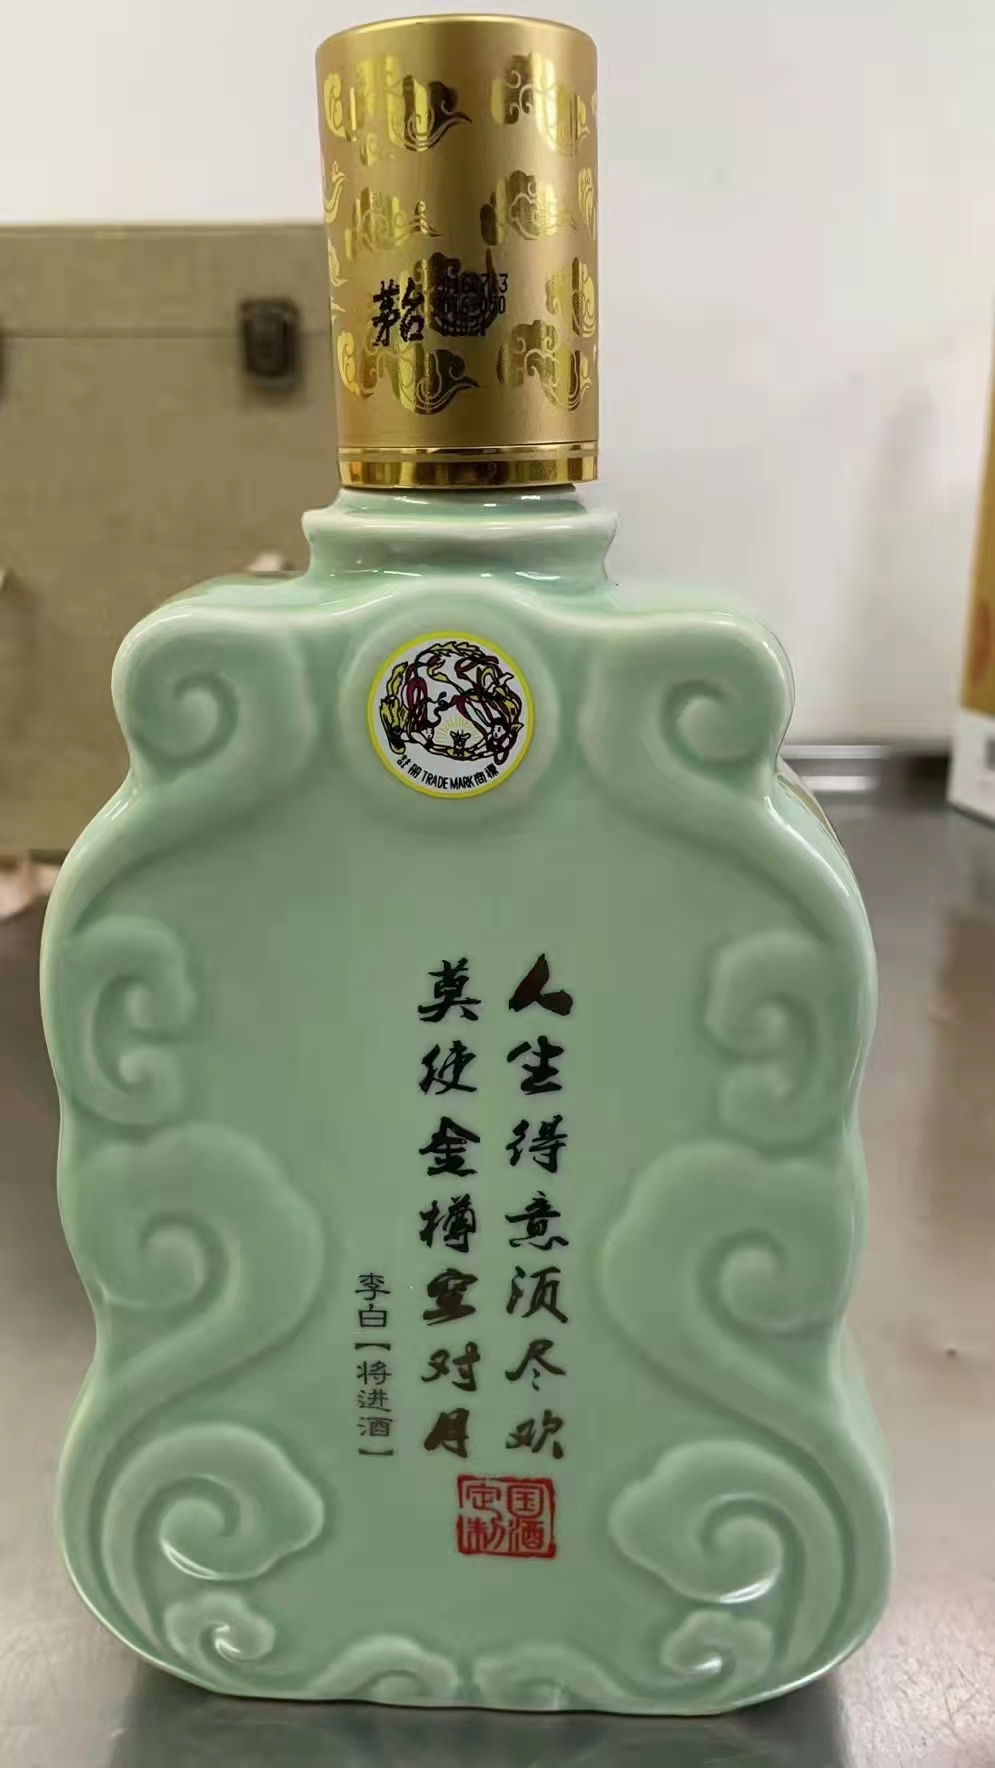 茅台出的这款李白将进酒便是对诗仙的缅怀,青色云纹瓶身,反面印着李白